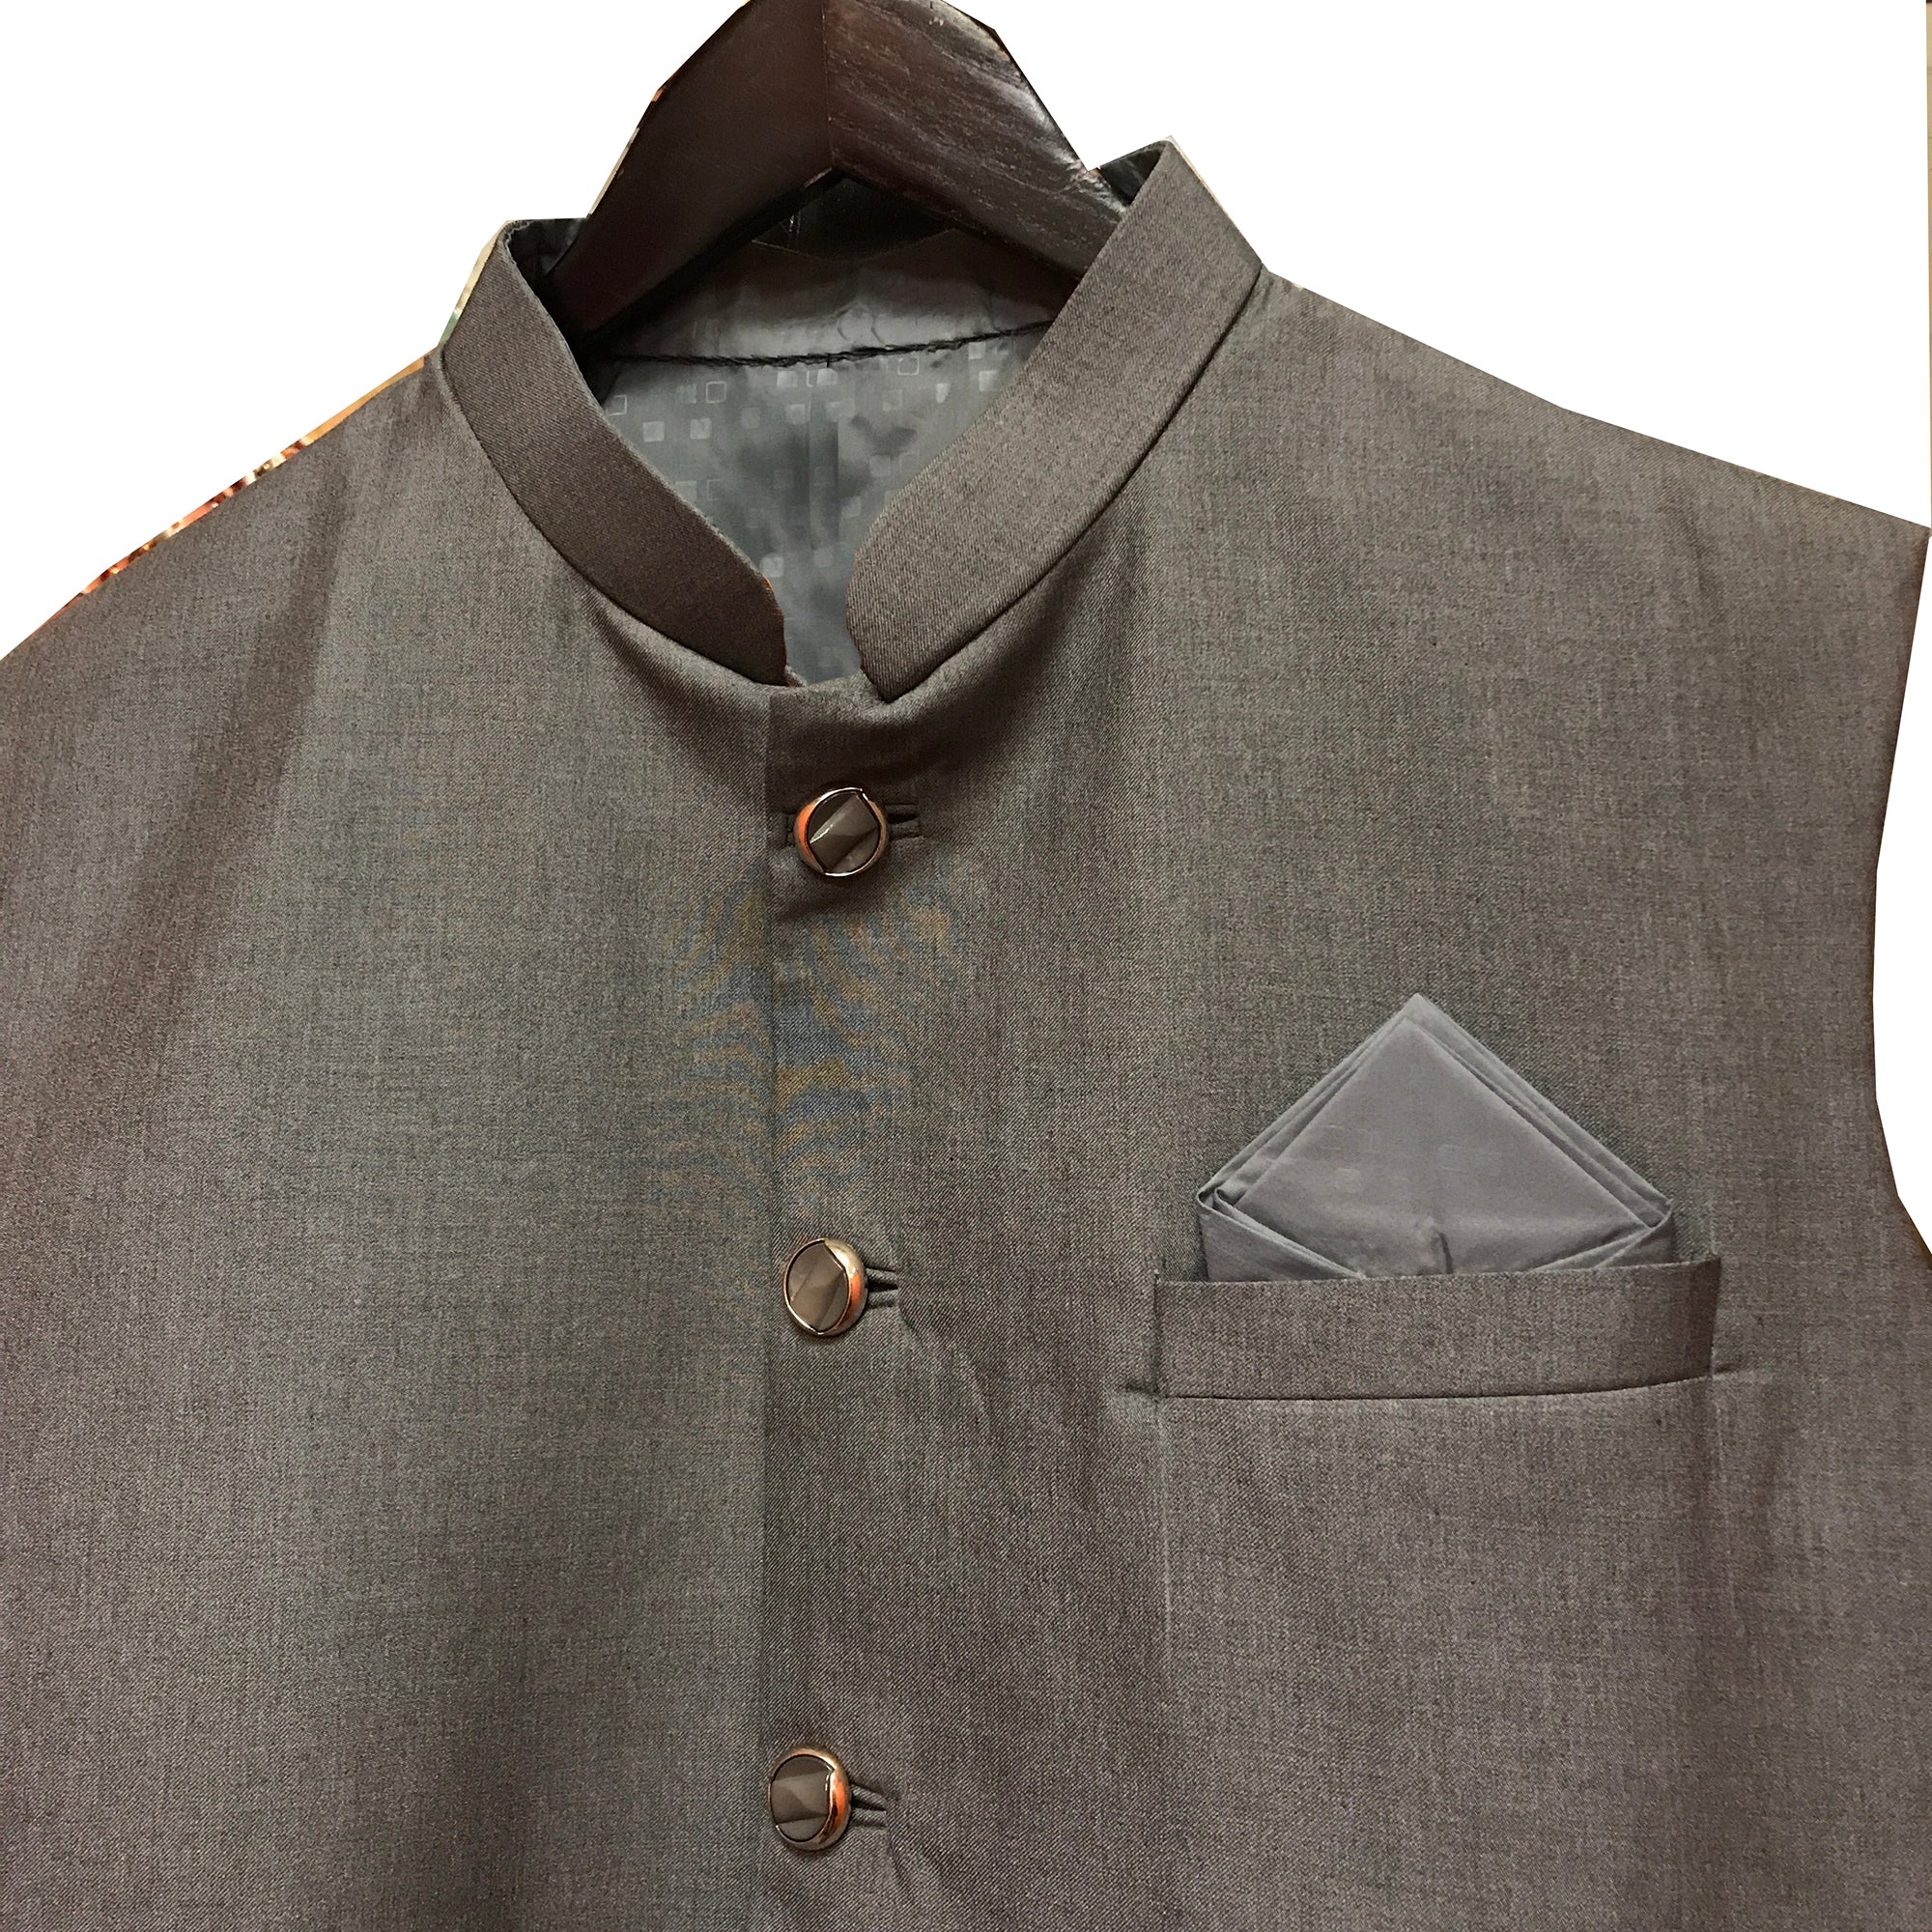 YD Grey Vest - Vintage India NYC